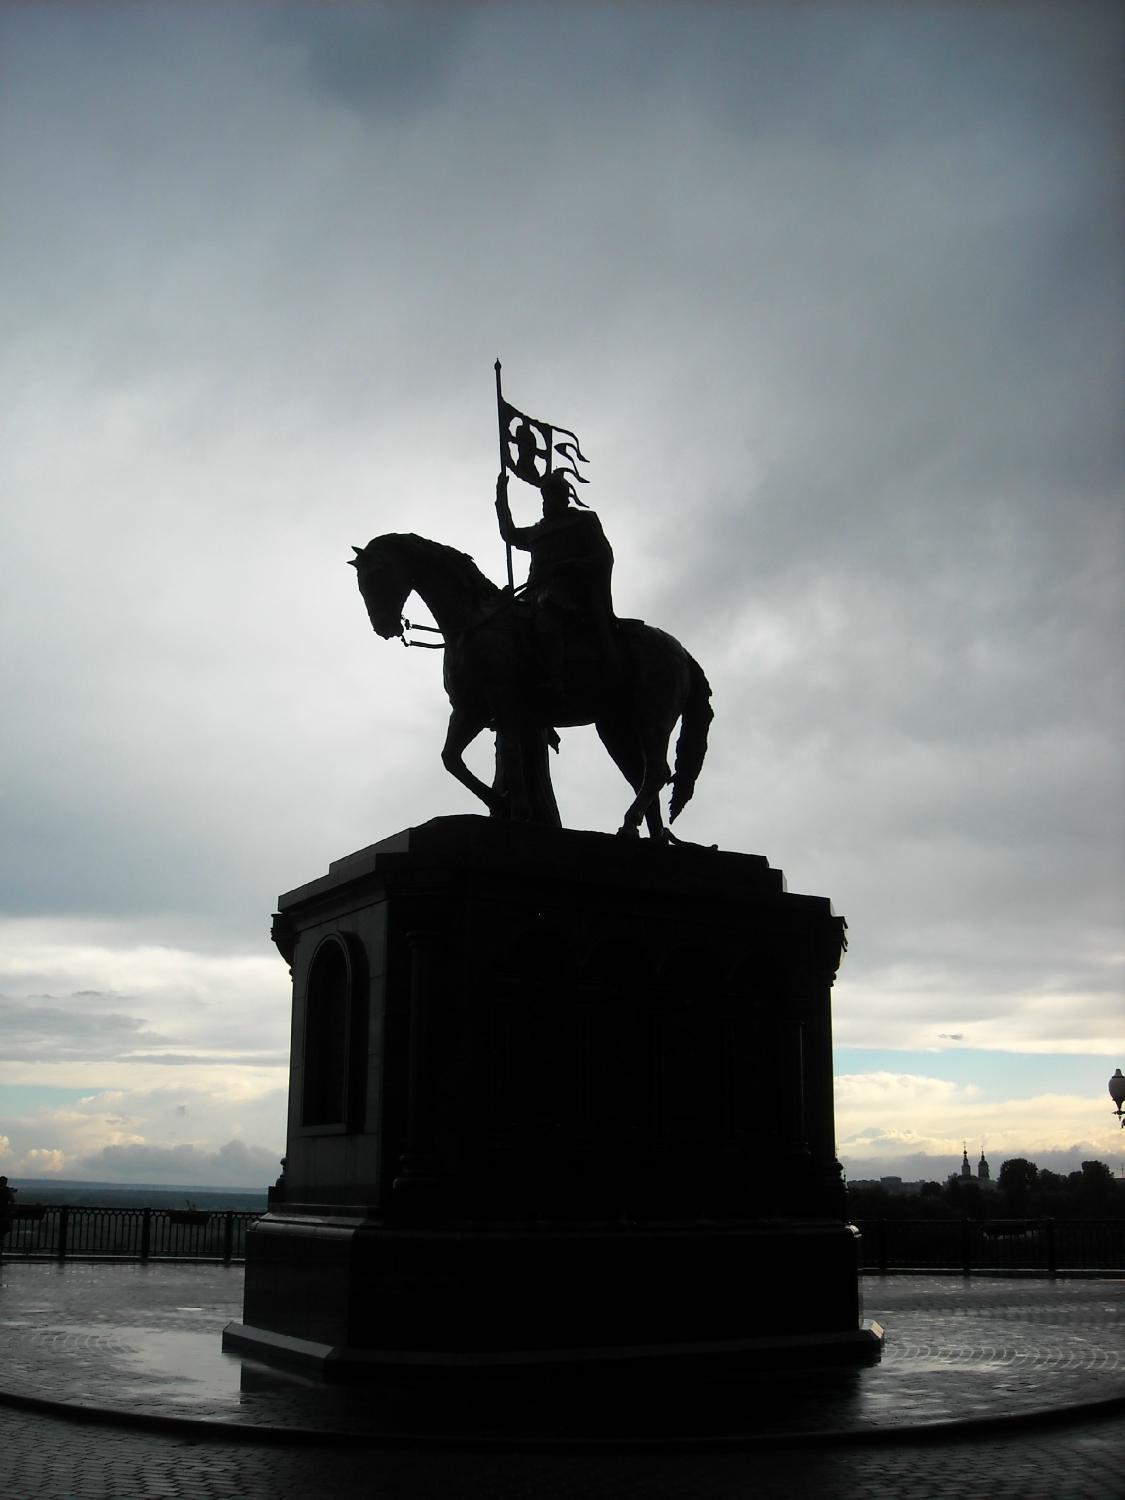 Памятник князю Владимиру и святому Федору